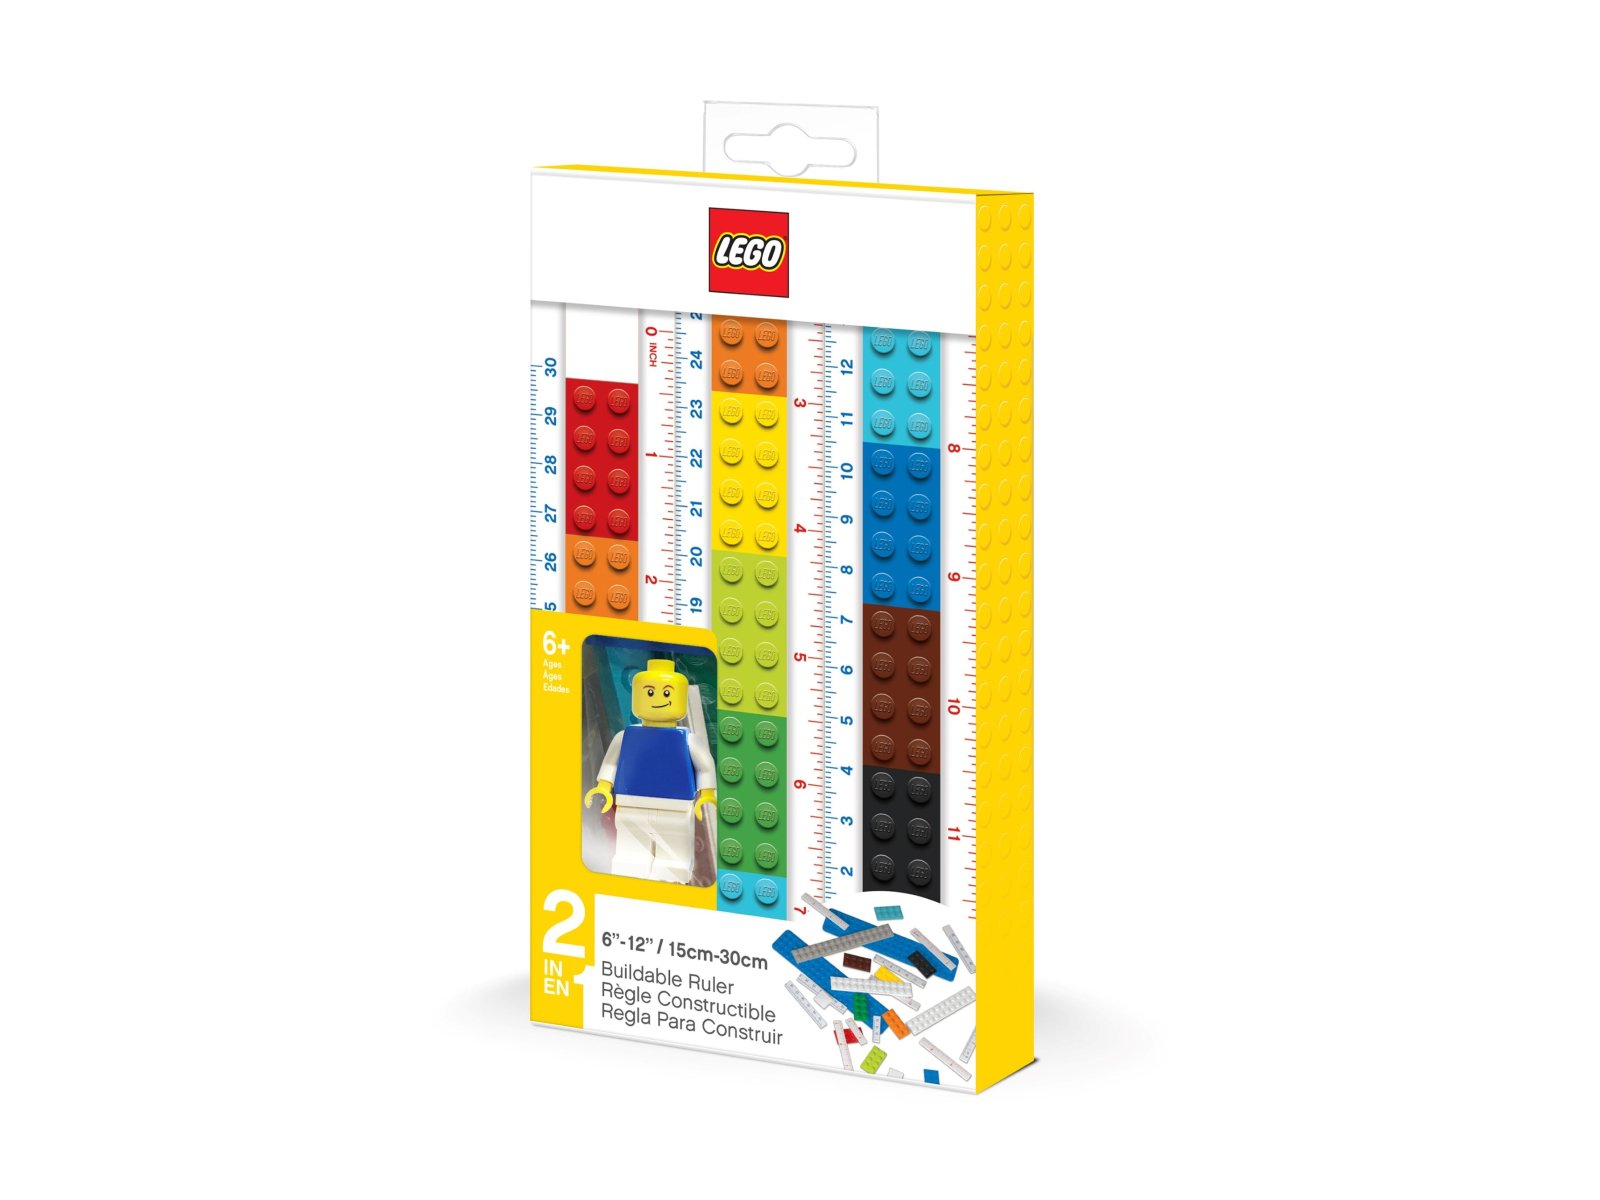 LEGO 5007195 2.0 Linijka do skonstruowania z minifigurką